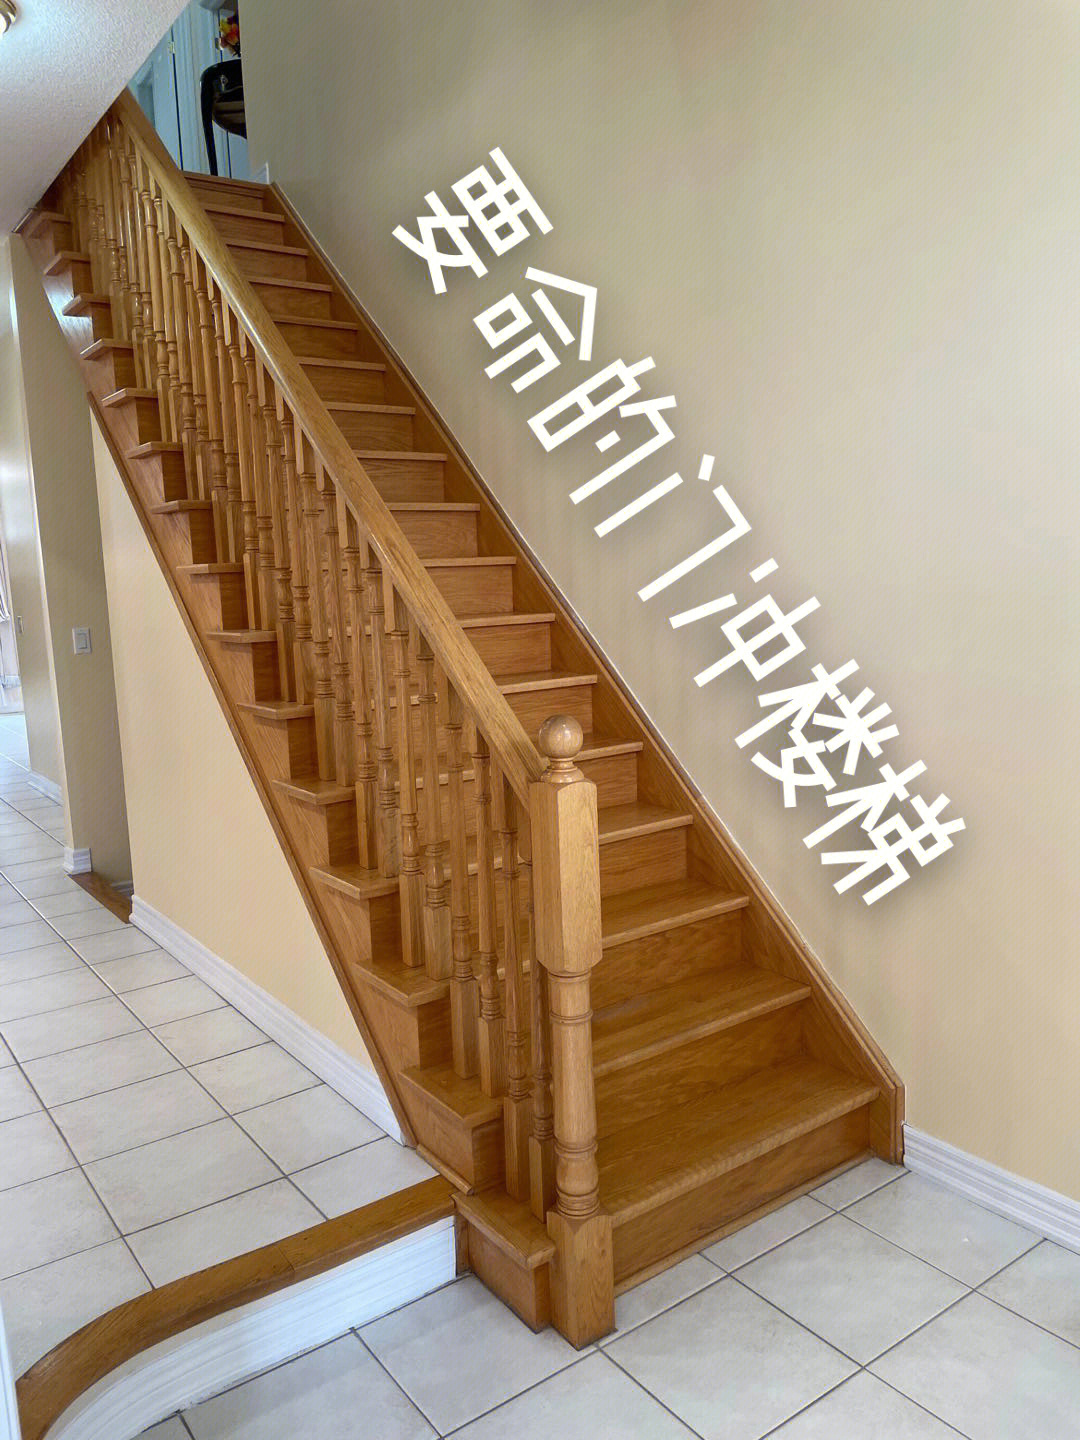 当初第一次看房的时候,就对这个门冲楼梯印象深刻,卖家经纪实在是太